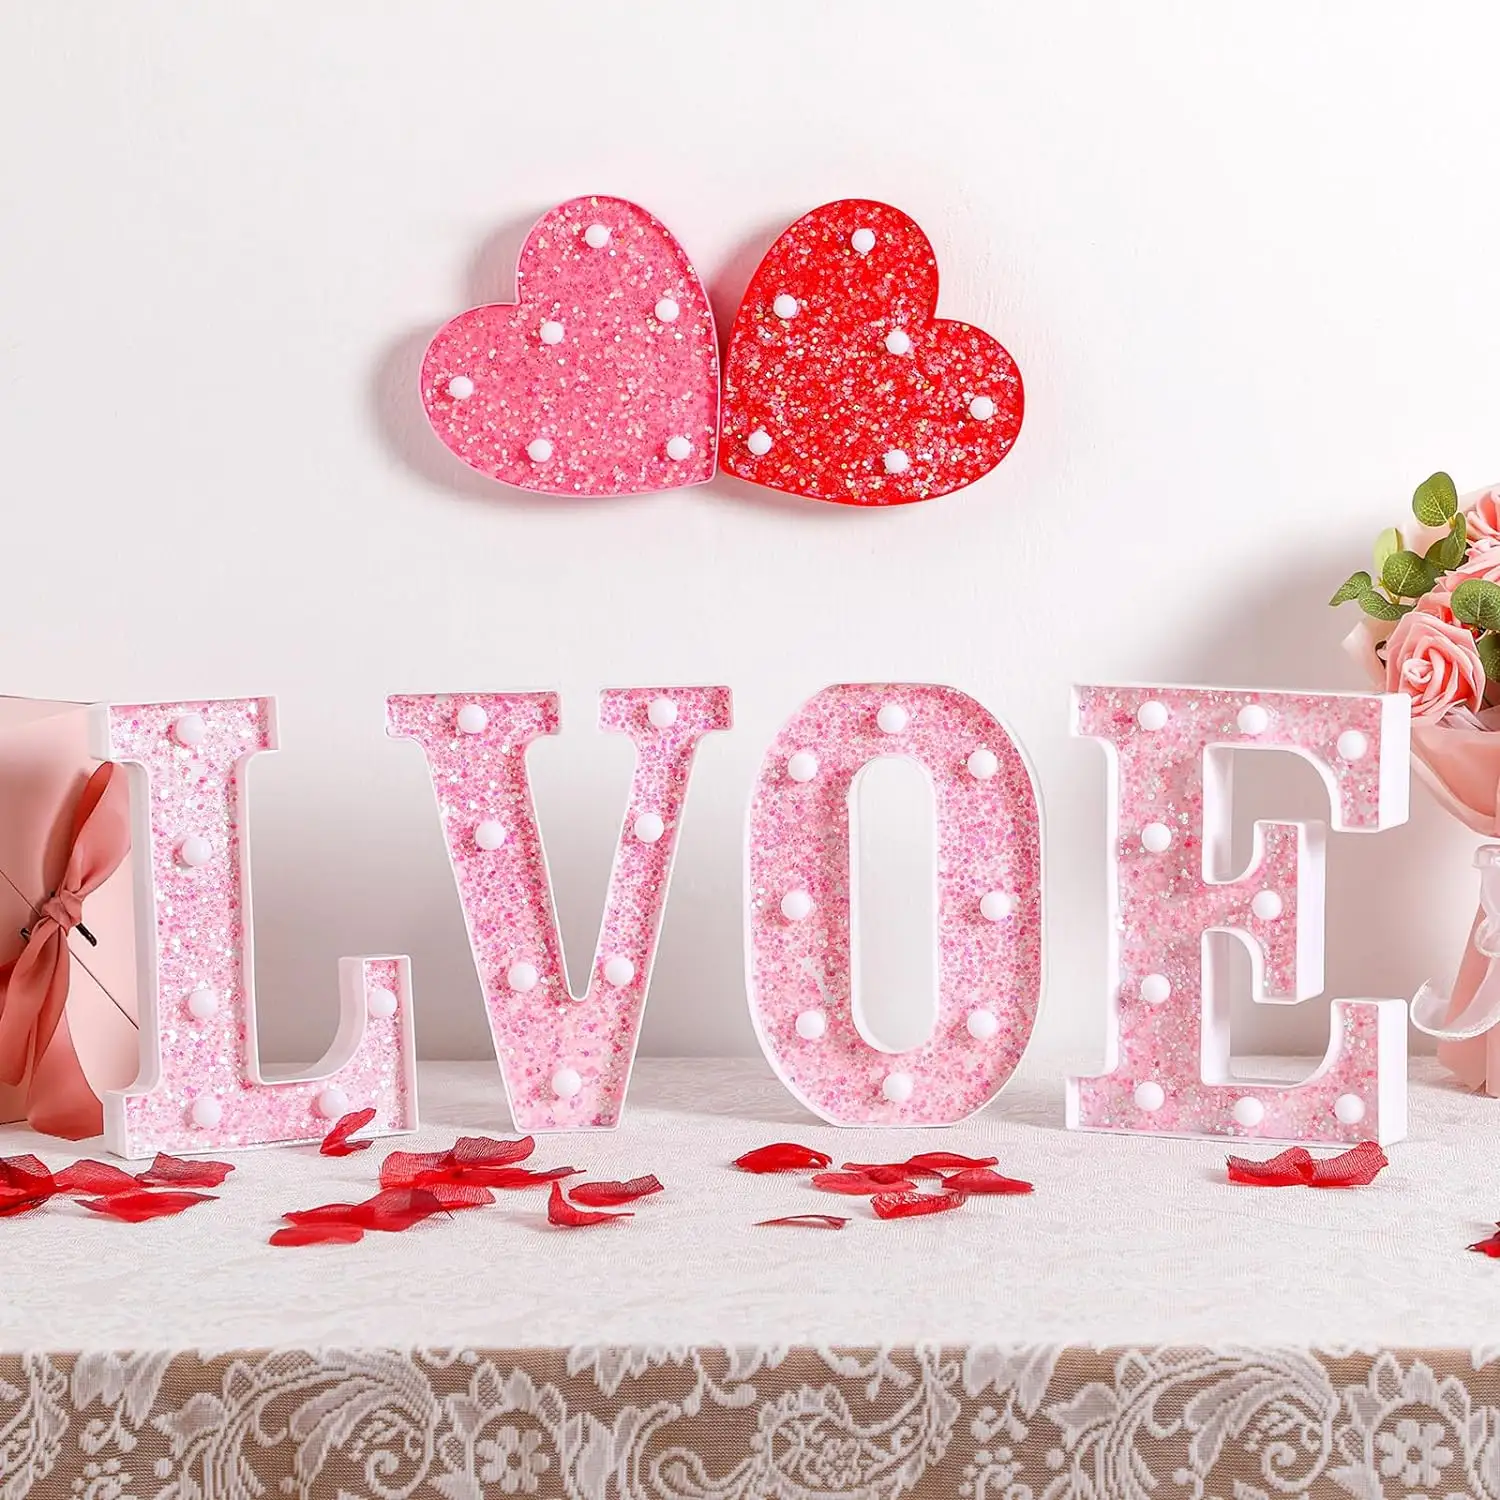 Liefde Roze Led Verlichte Letters Ambient Decoratie Voor Valentijnsdag En Huwelijk Voorstellen Verpakt In Geschenkdoos Met Pvc